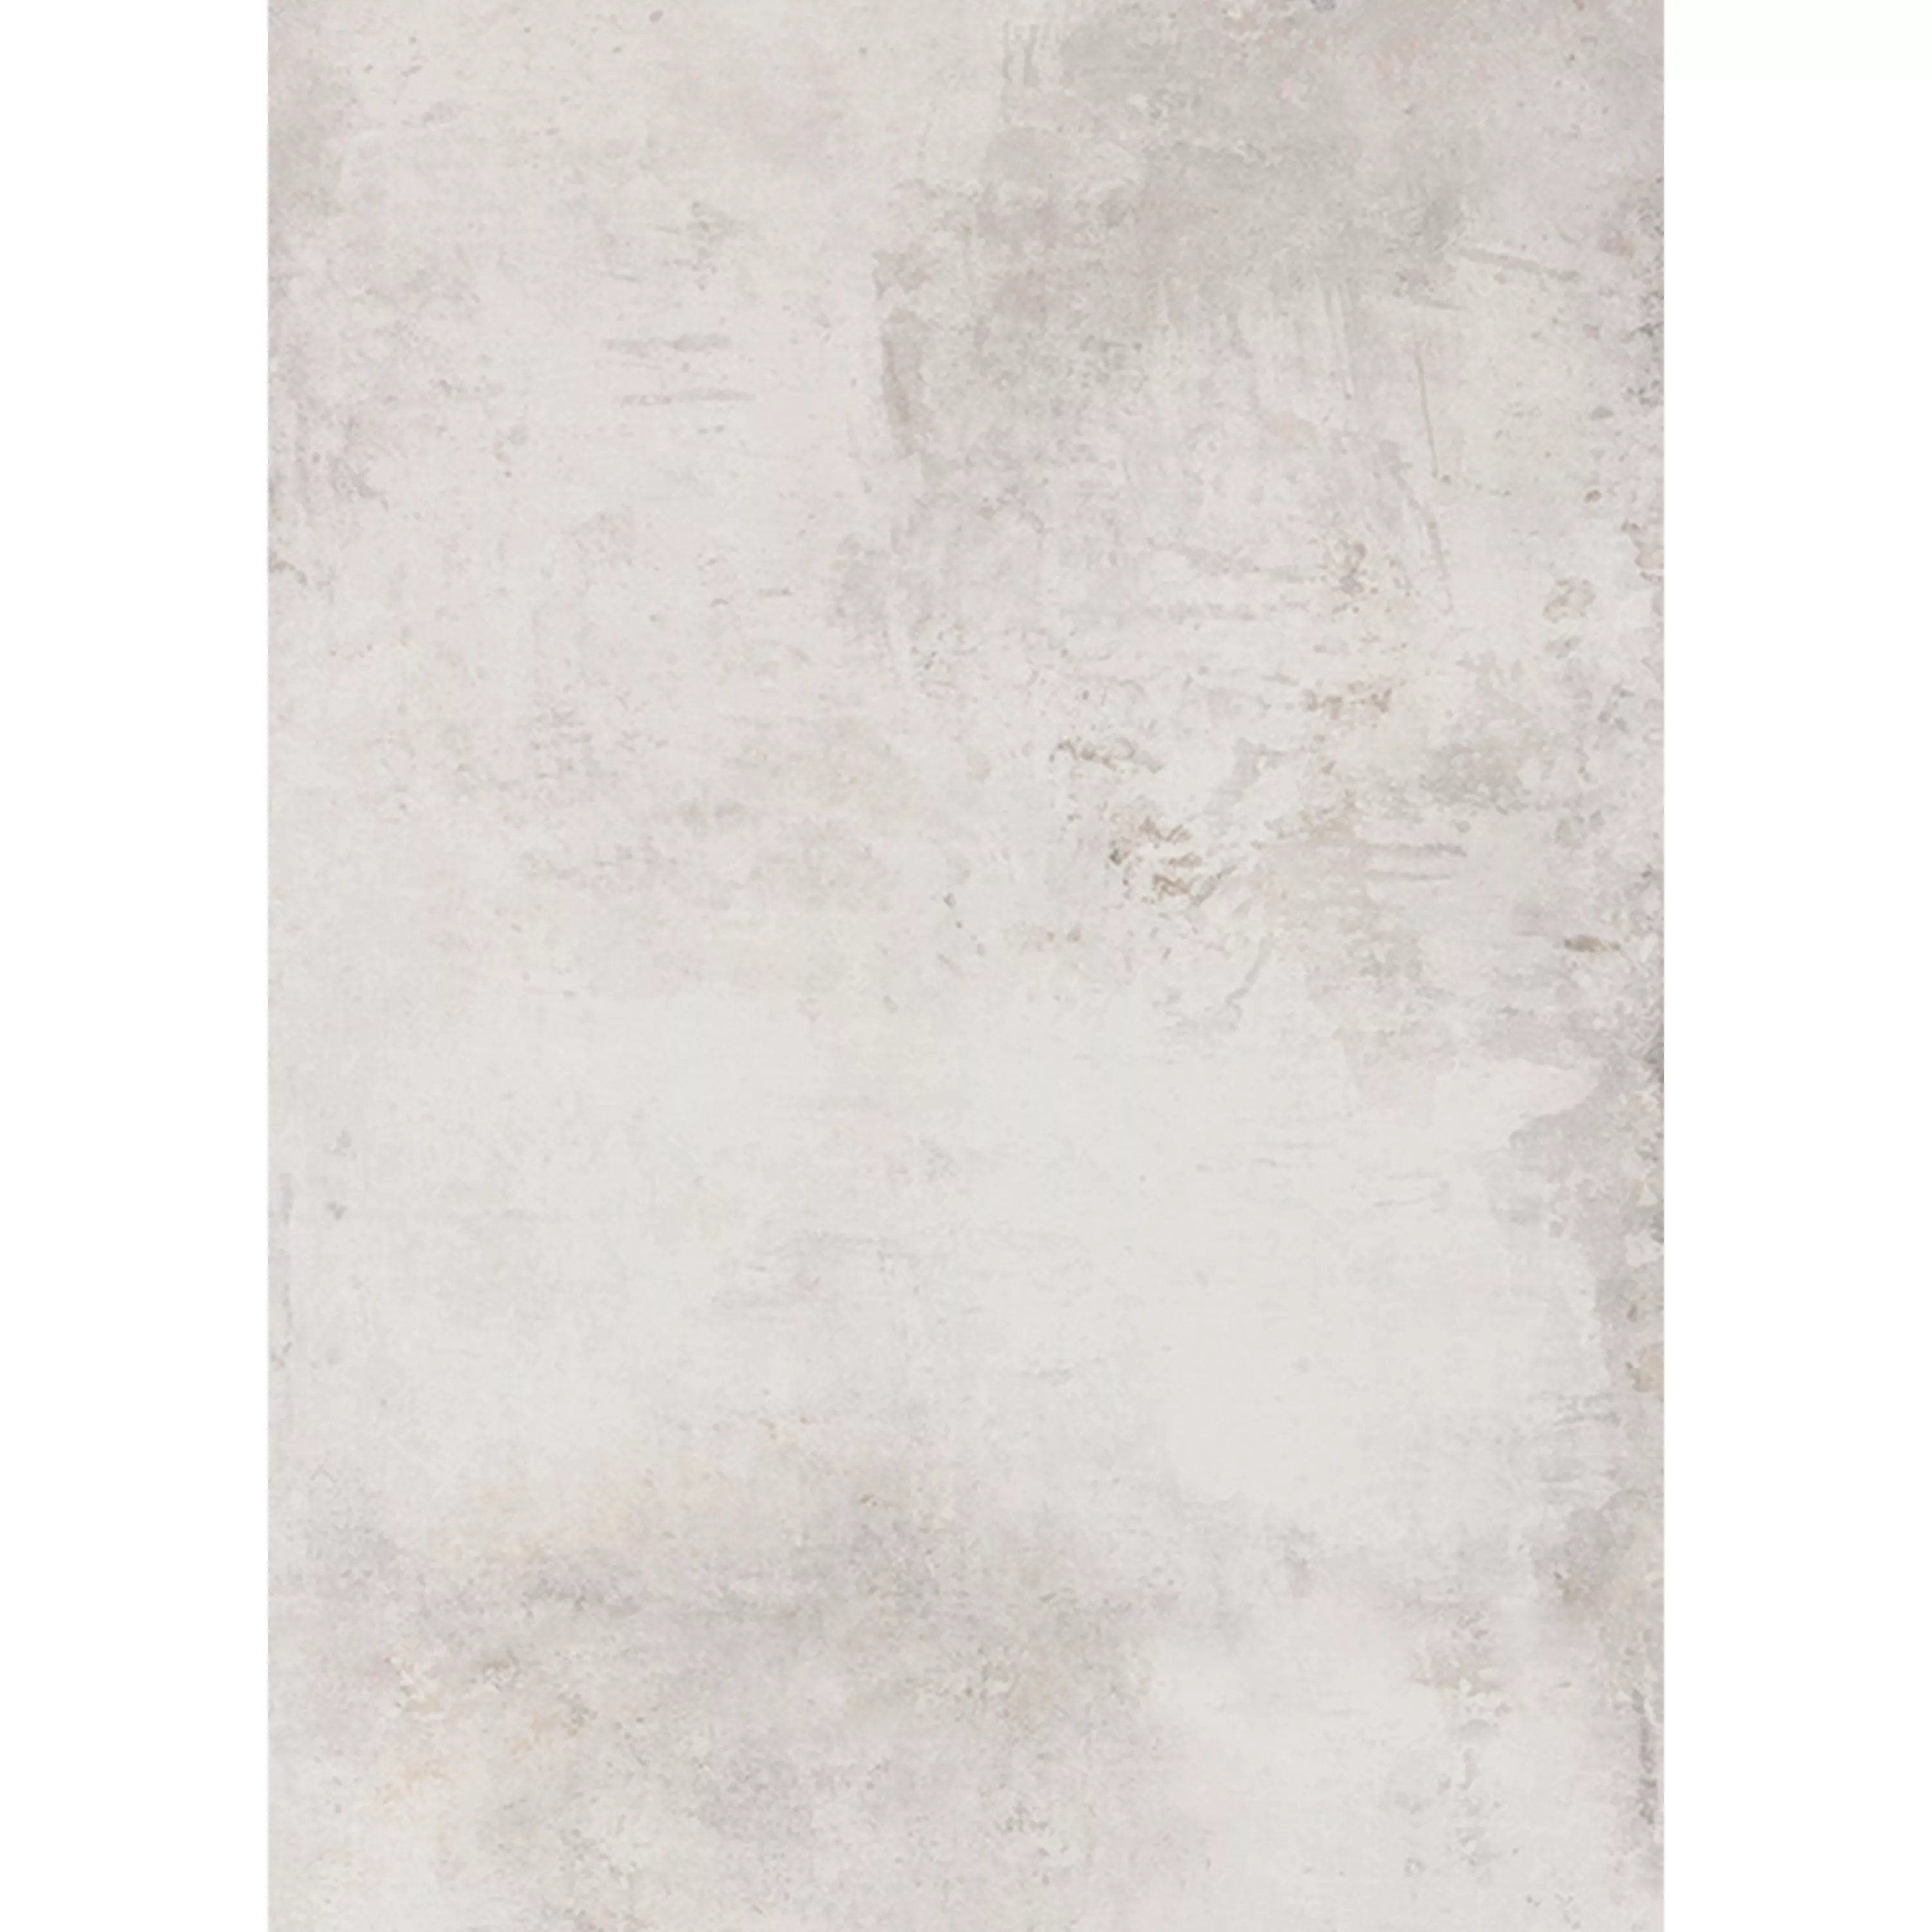 Ladrilhos Poetic Olhar de Pedra R10/A Branco Ladrilho De Base 60x120cm